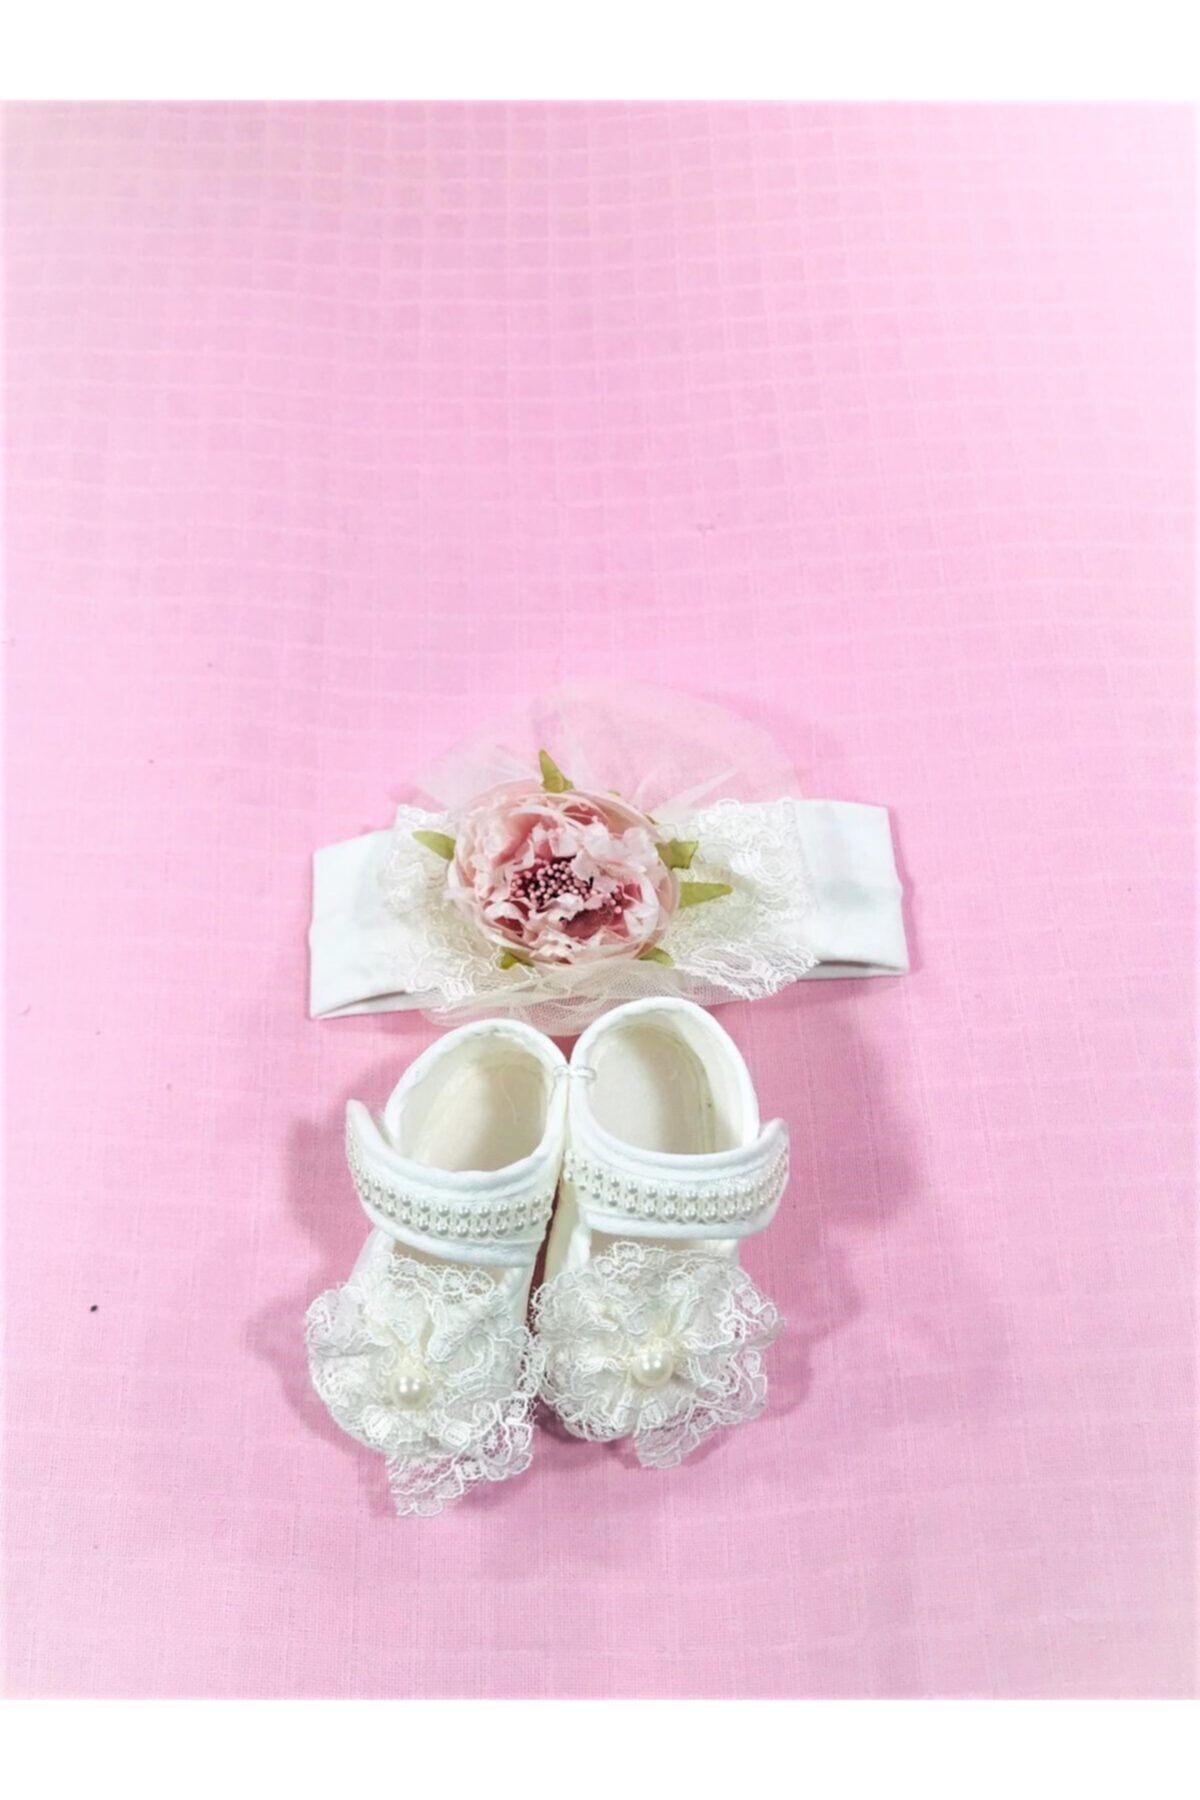 CILGIN BEBEK Yeni Doğan Beyaz Ayakkabı Bandana Set